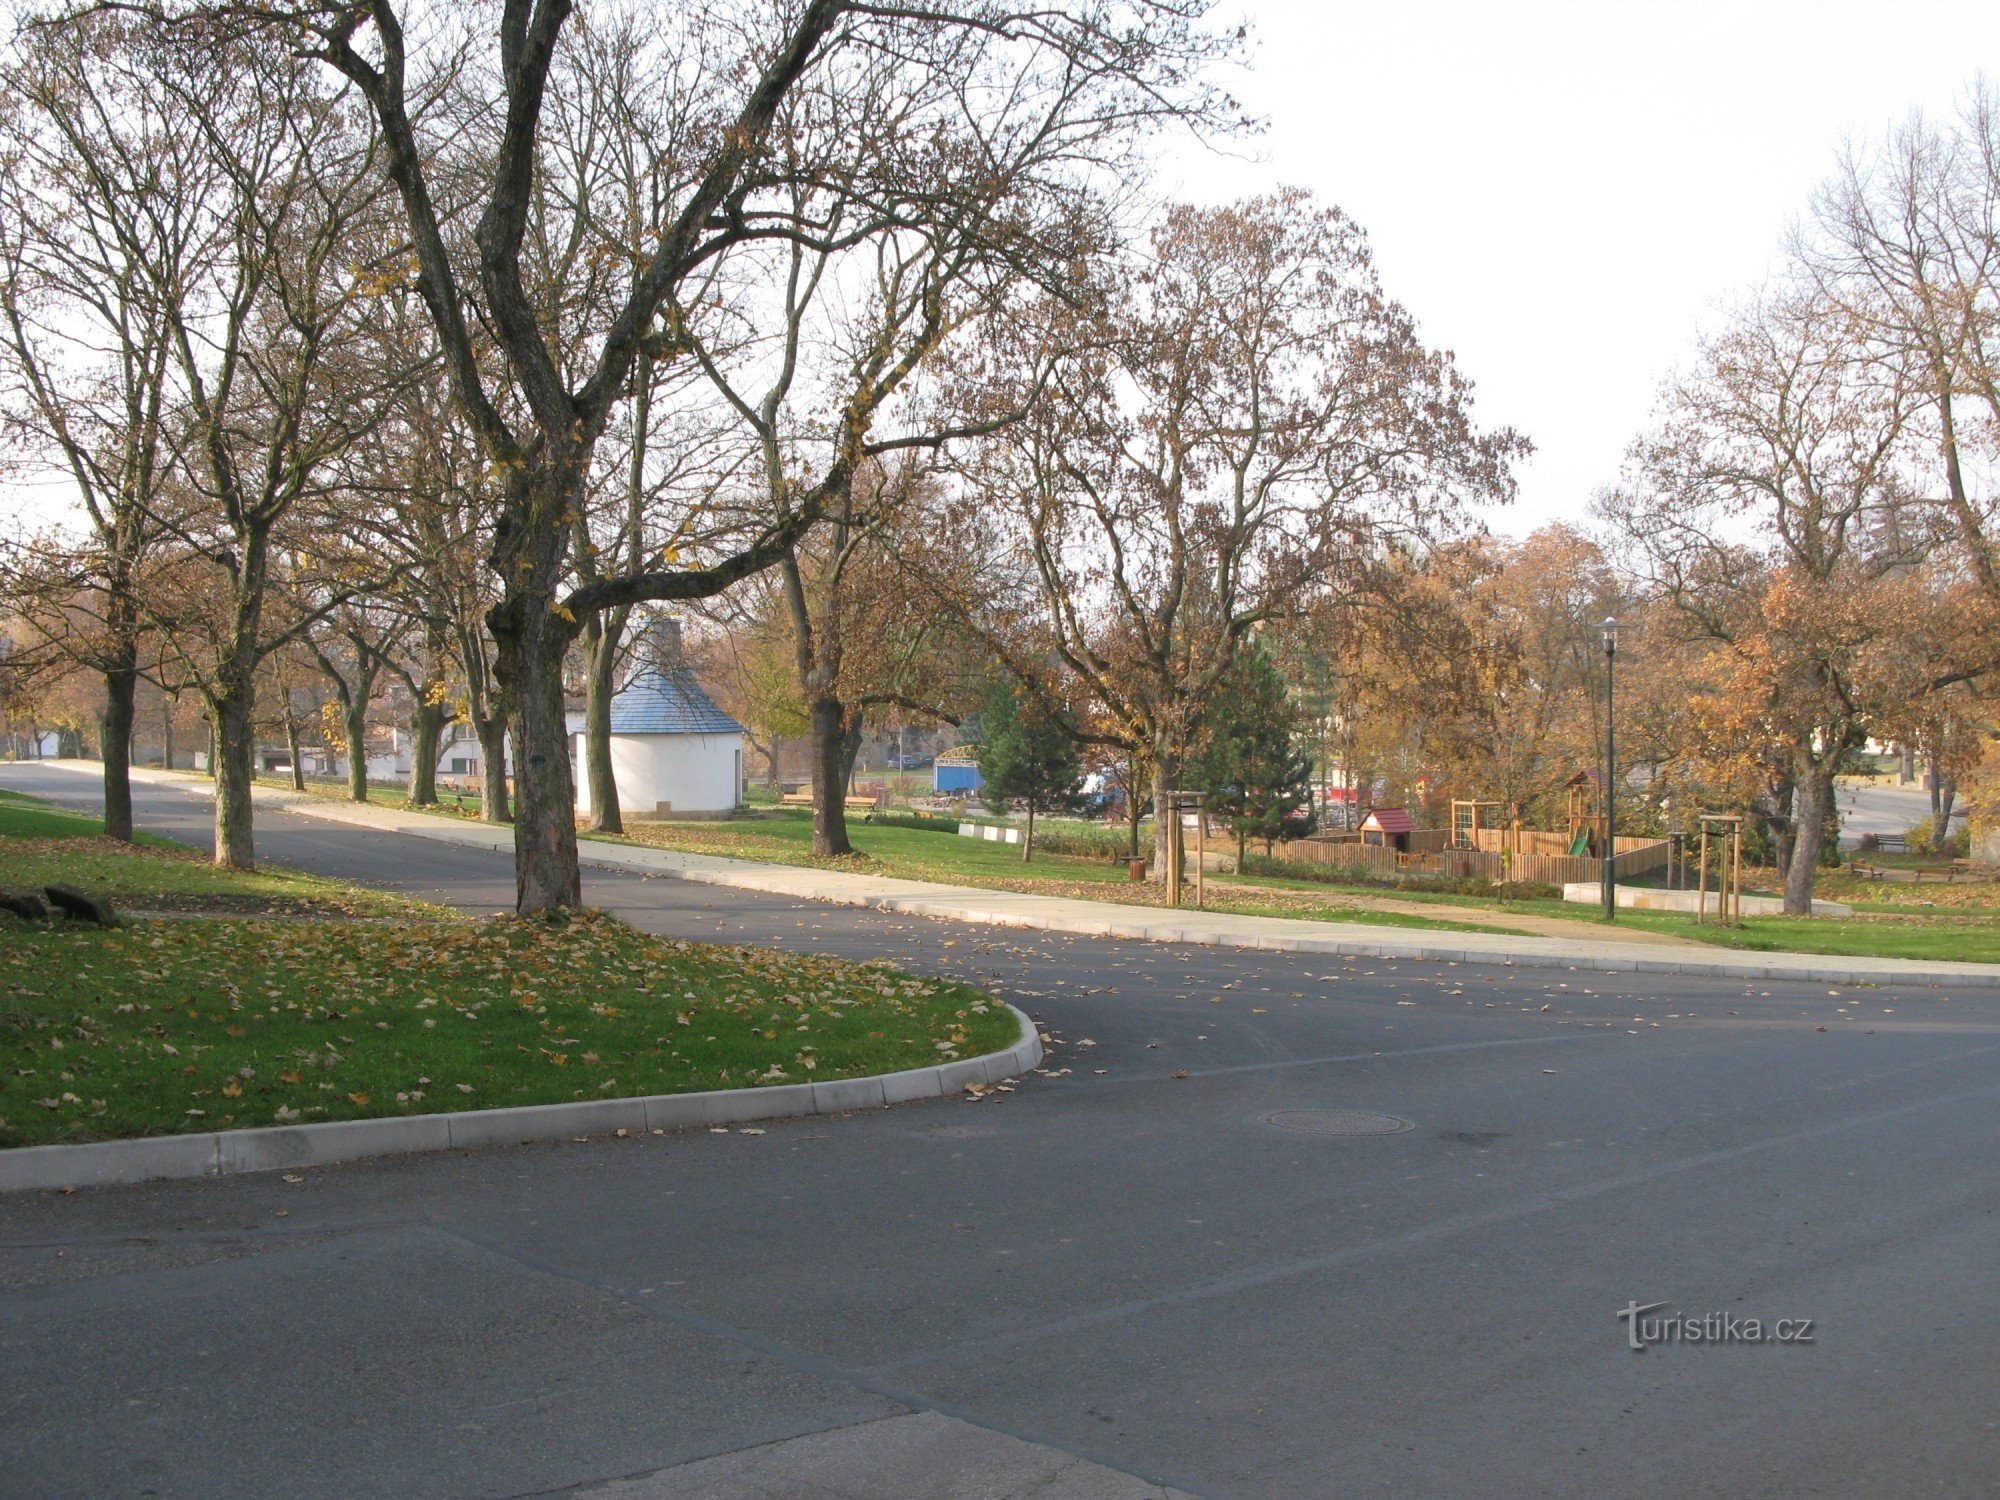 Kamenné Žehrovice, parc (vedere de pe strada Politických vezňů)